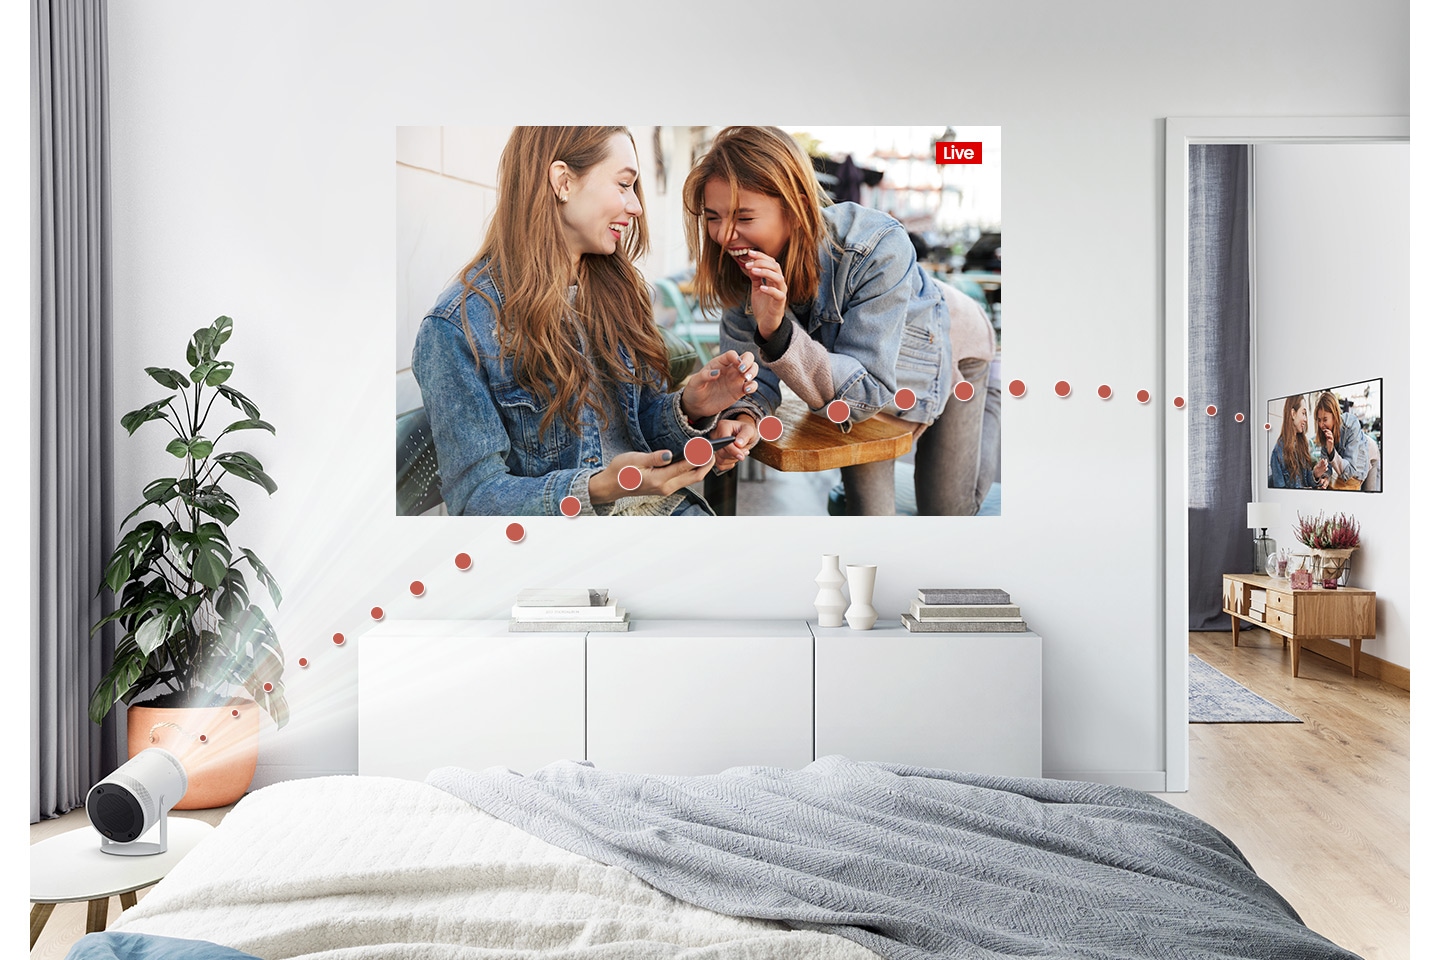 The Freestyle è collegato alla TV del soggiorno e riproduce contenuti TV direttamente nella camera da letto.